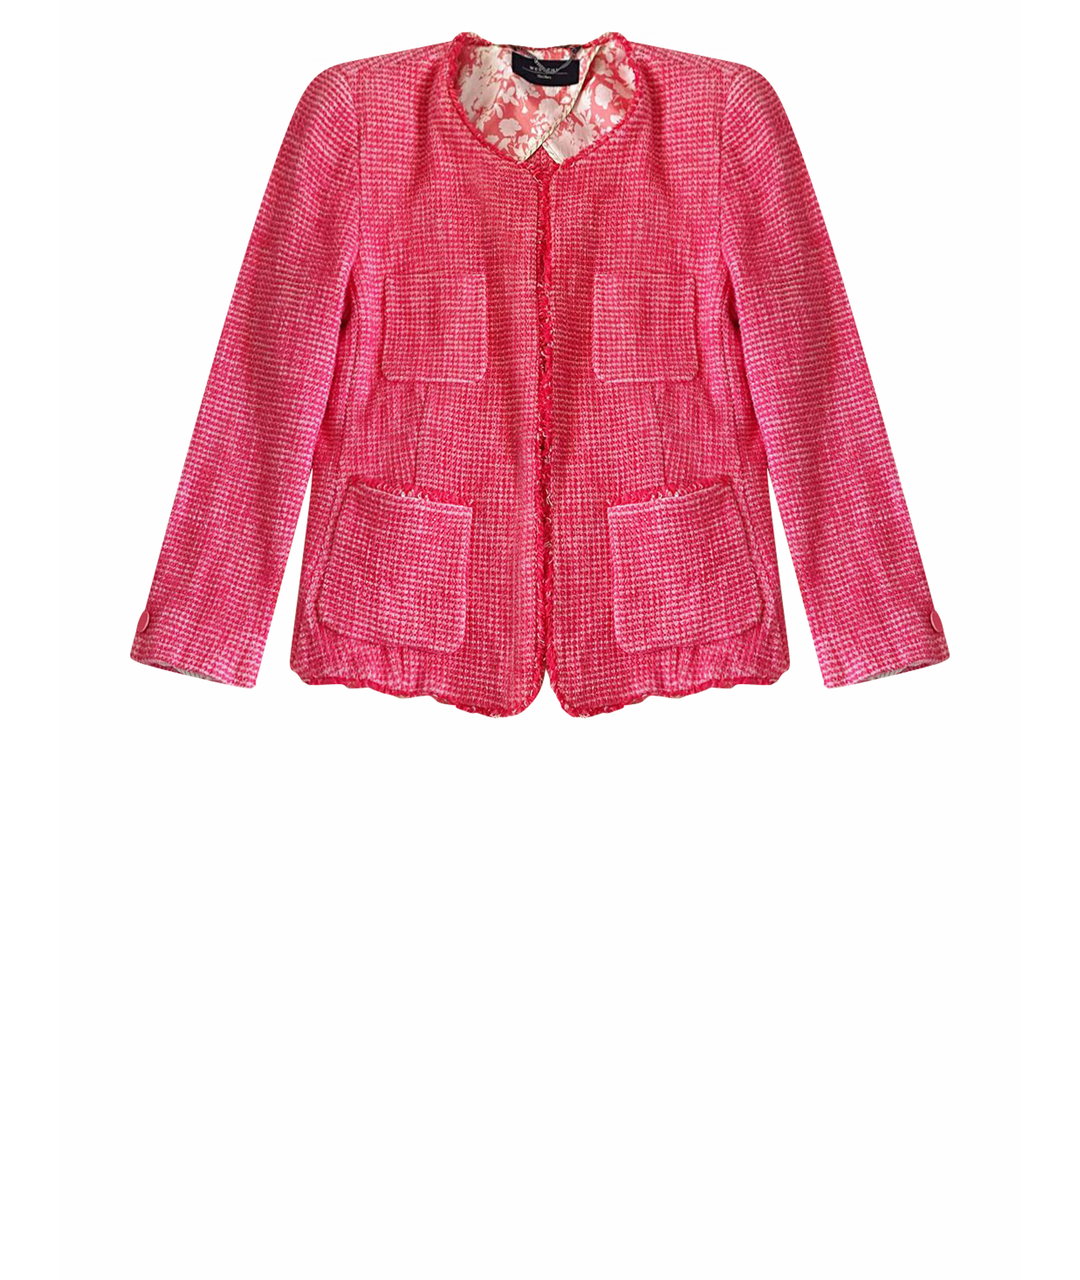 WEEKEND MAX MARA Розовый хлопковый жакет/пиджак, фото 1